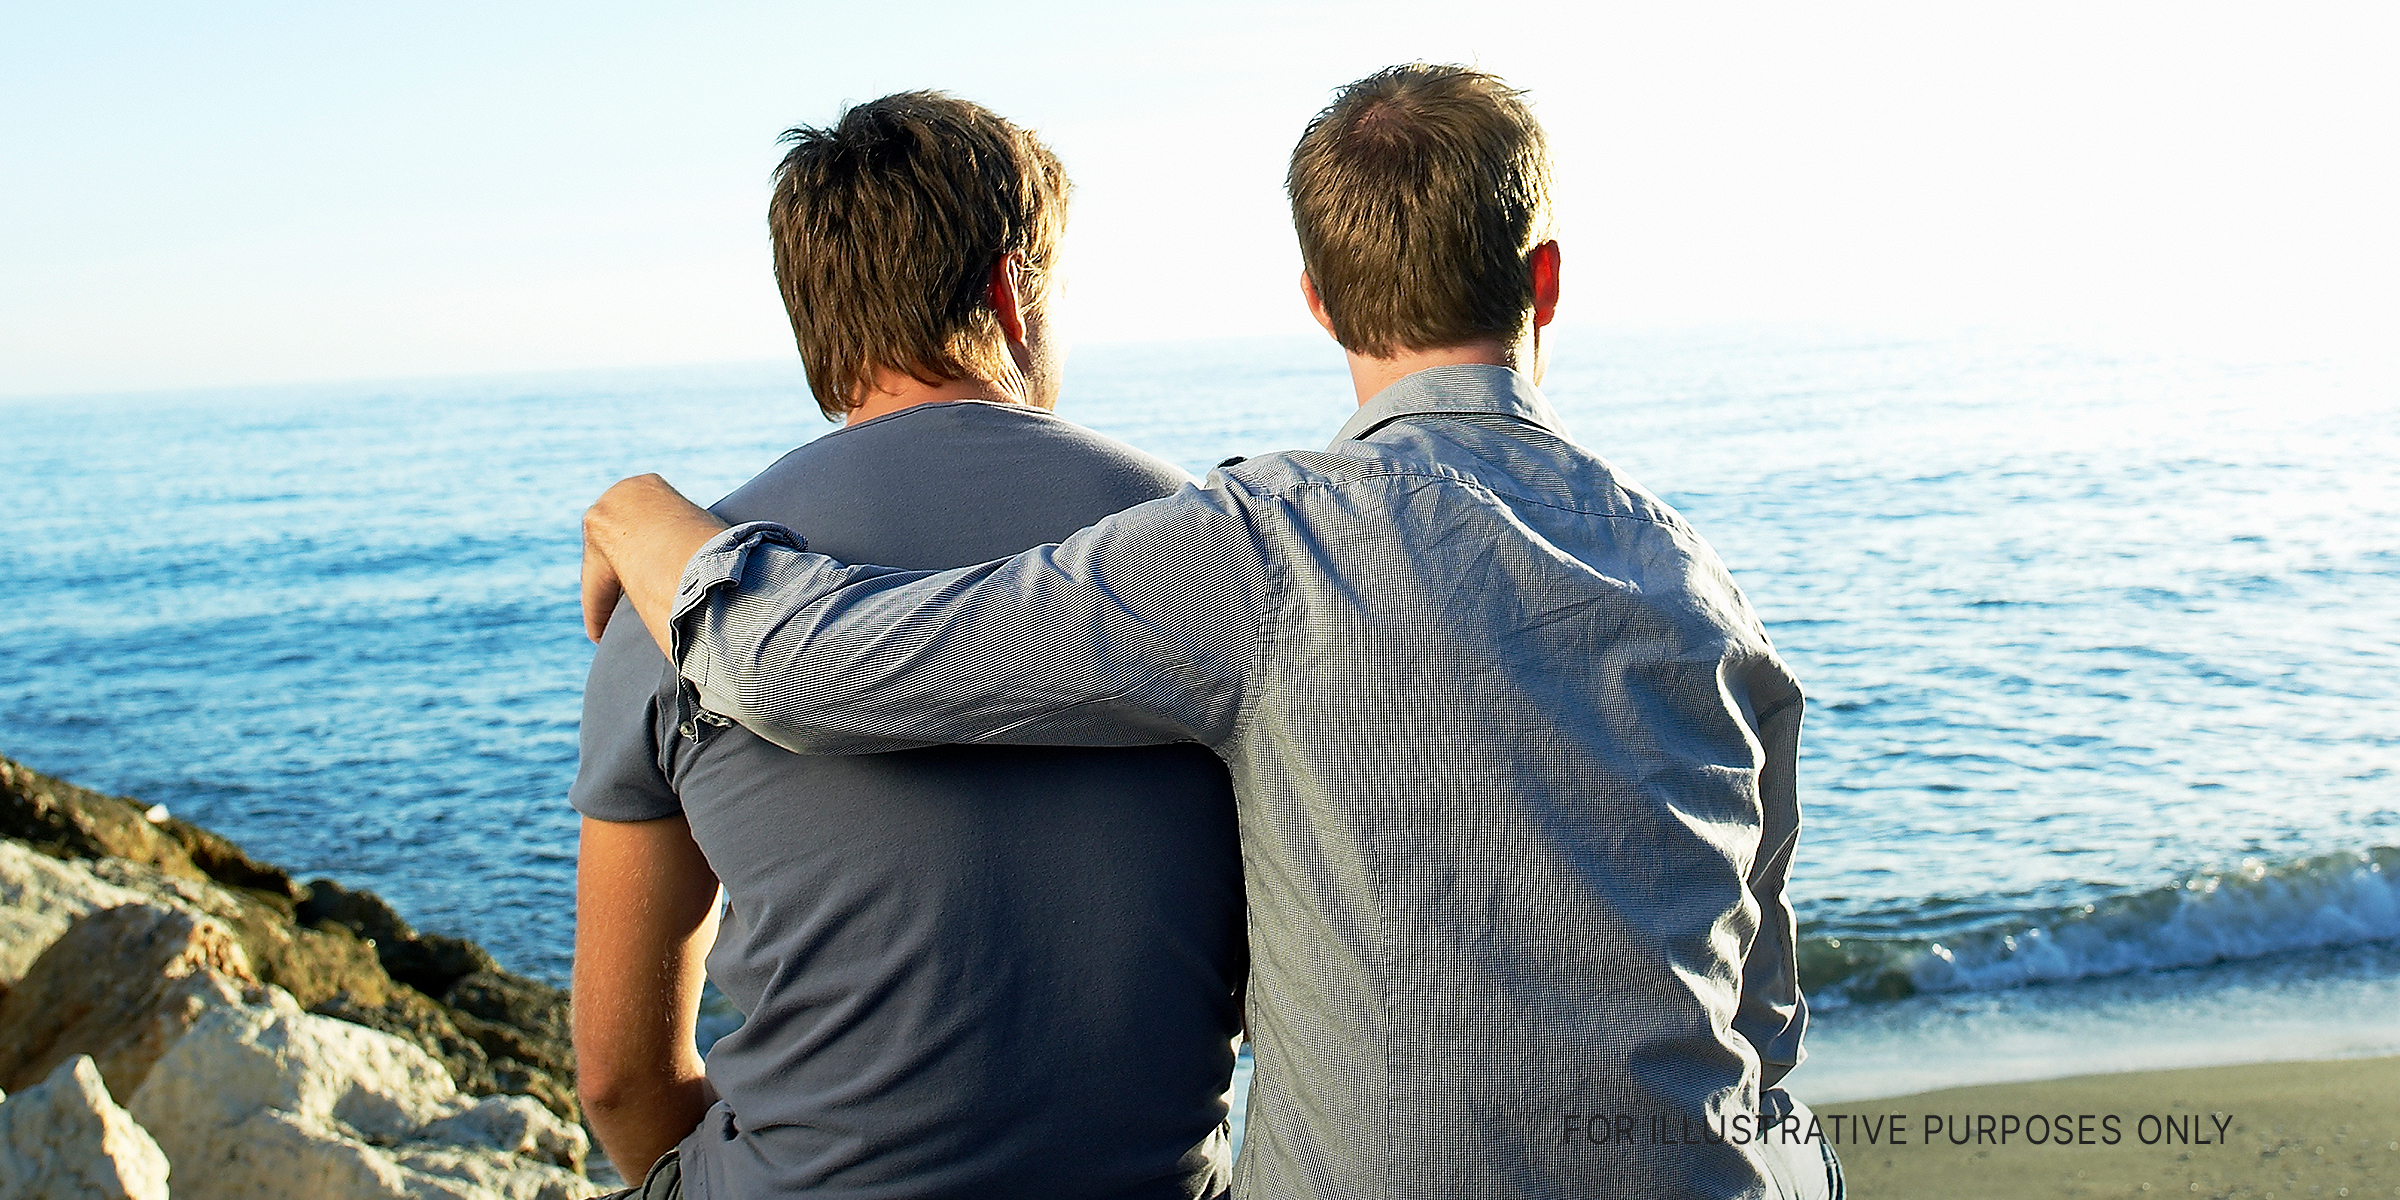 Dos hombres contemplando una vista mientras uno abraza al otro | Foto: Getty Images